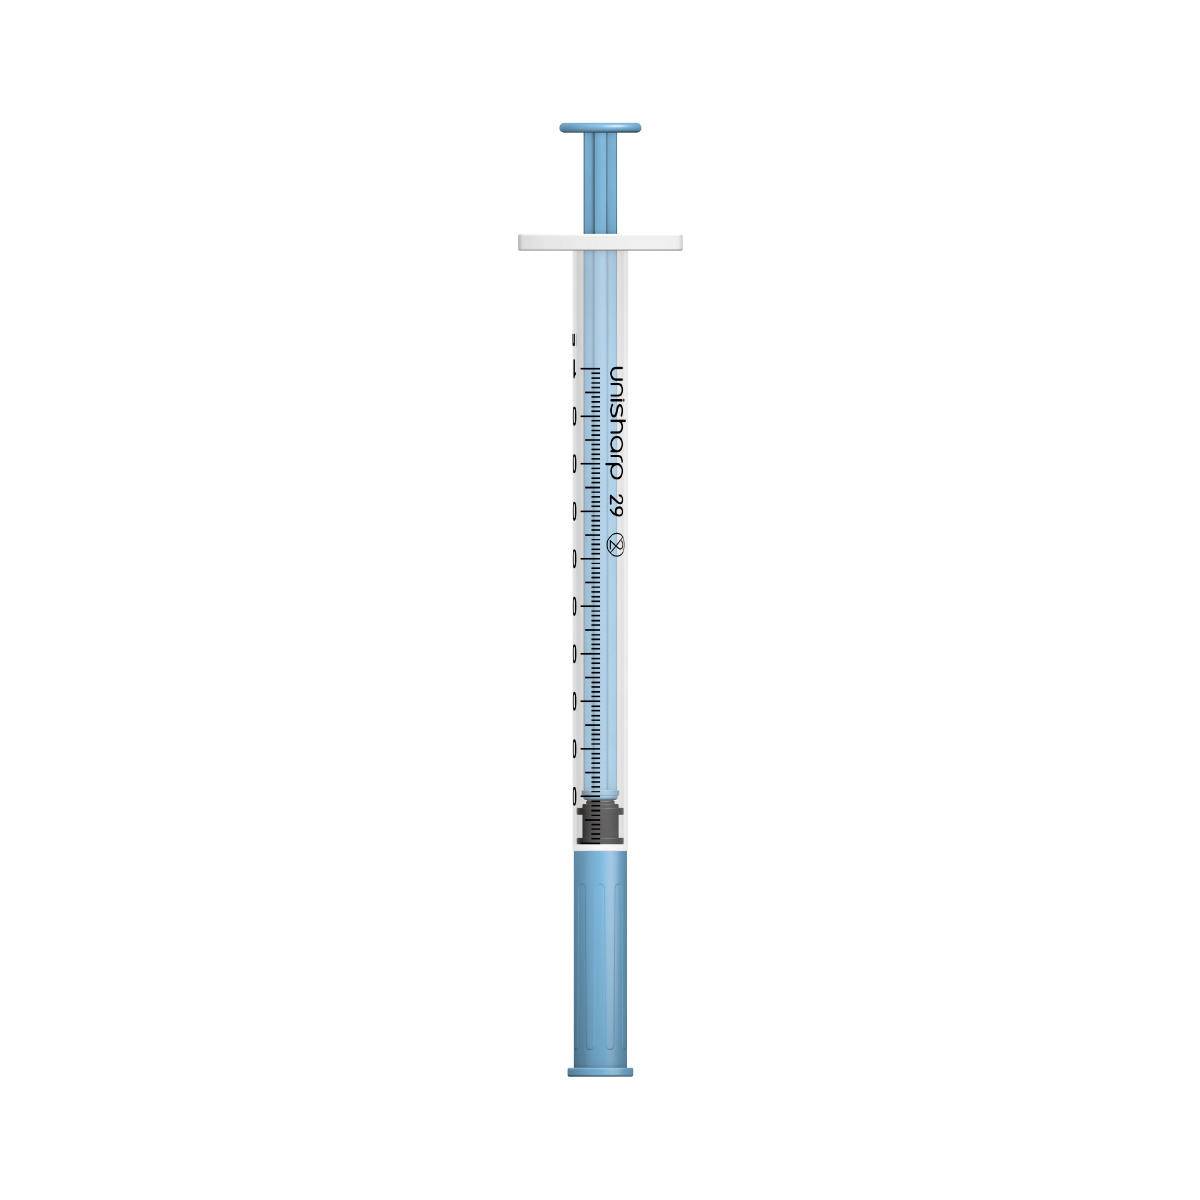 1ml 0.5 inch 29g Blue Unisharp Syringe and Needle u100 - UKMEDI